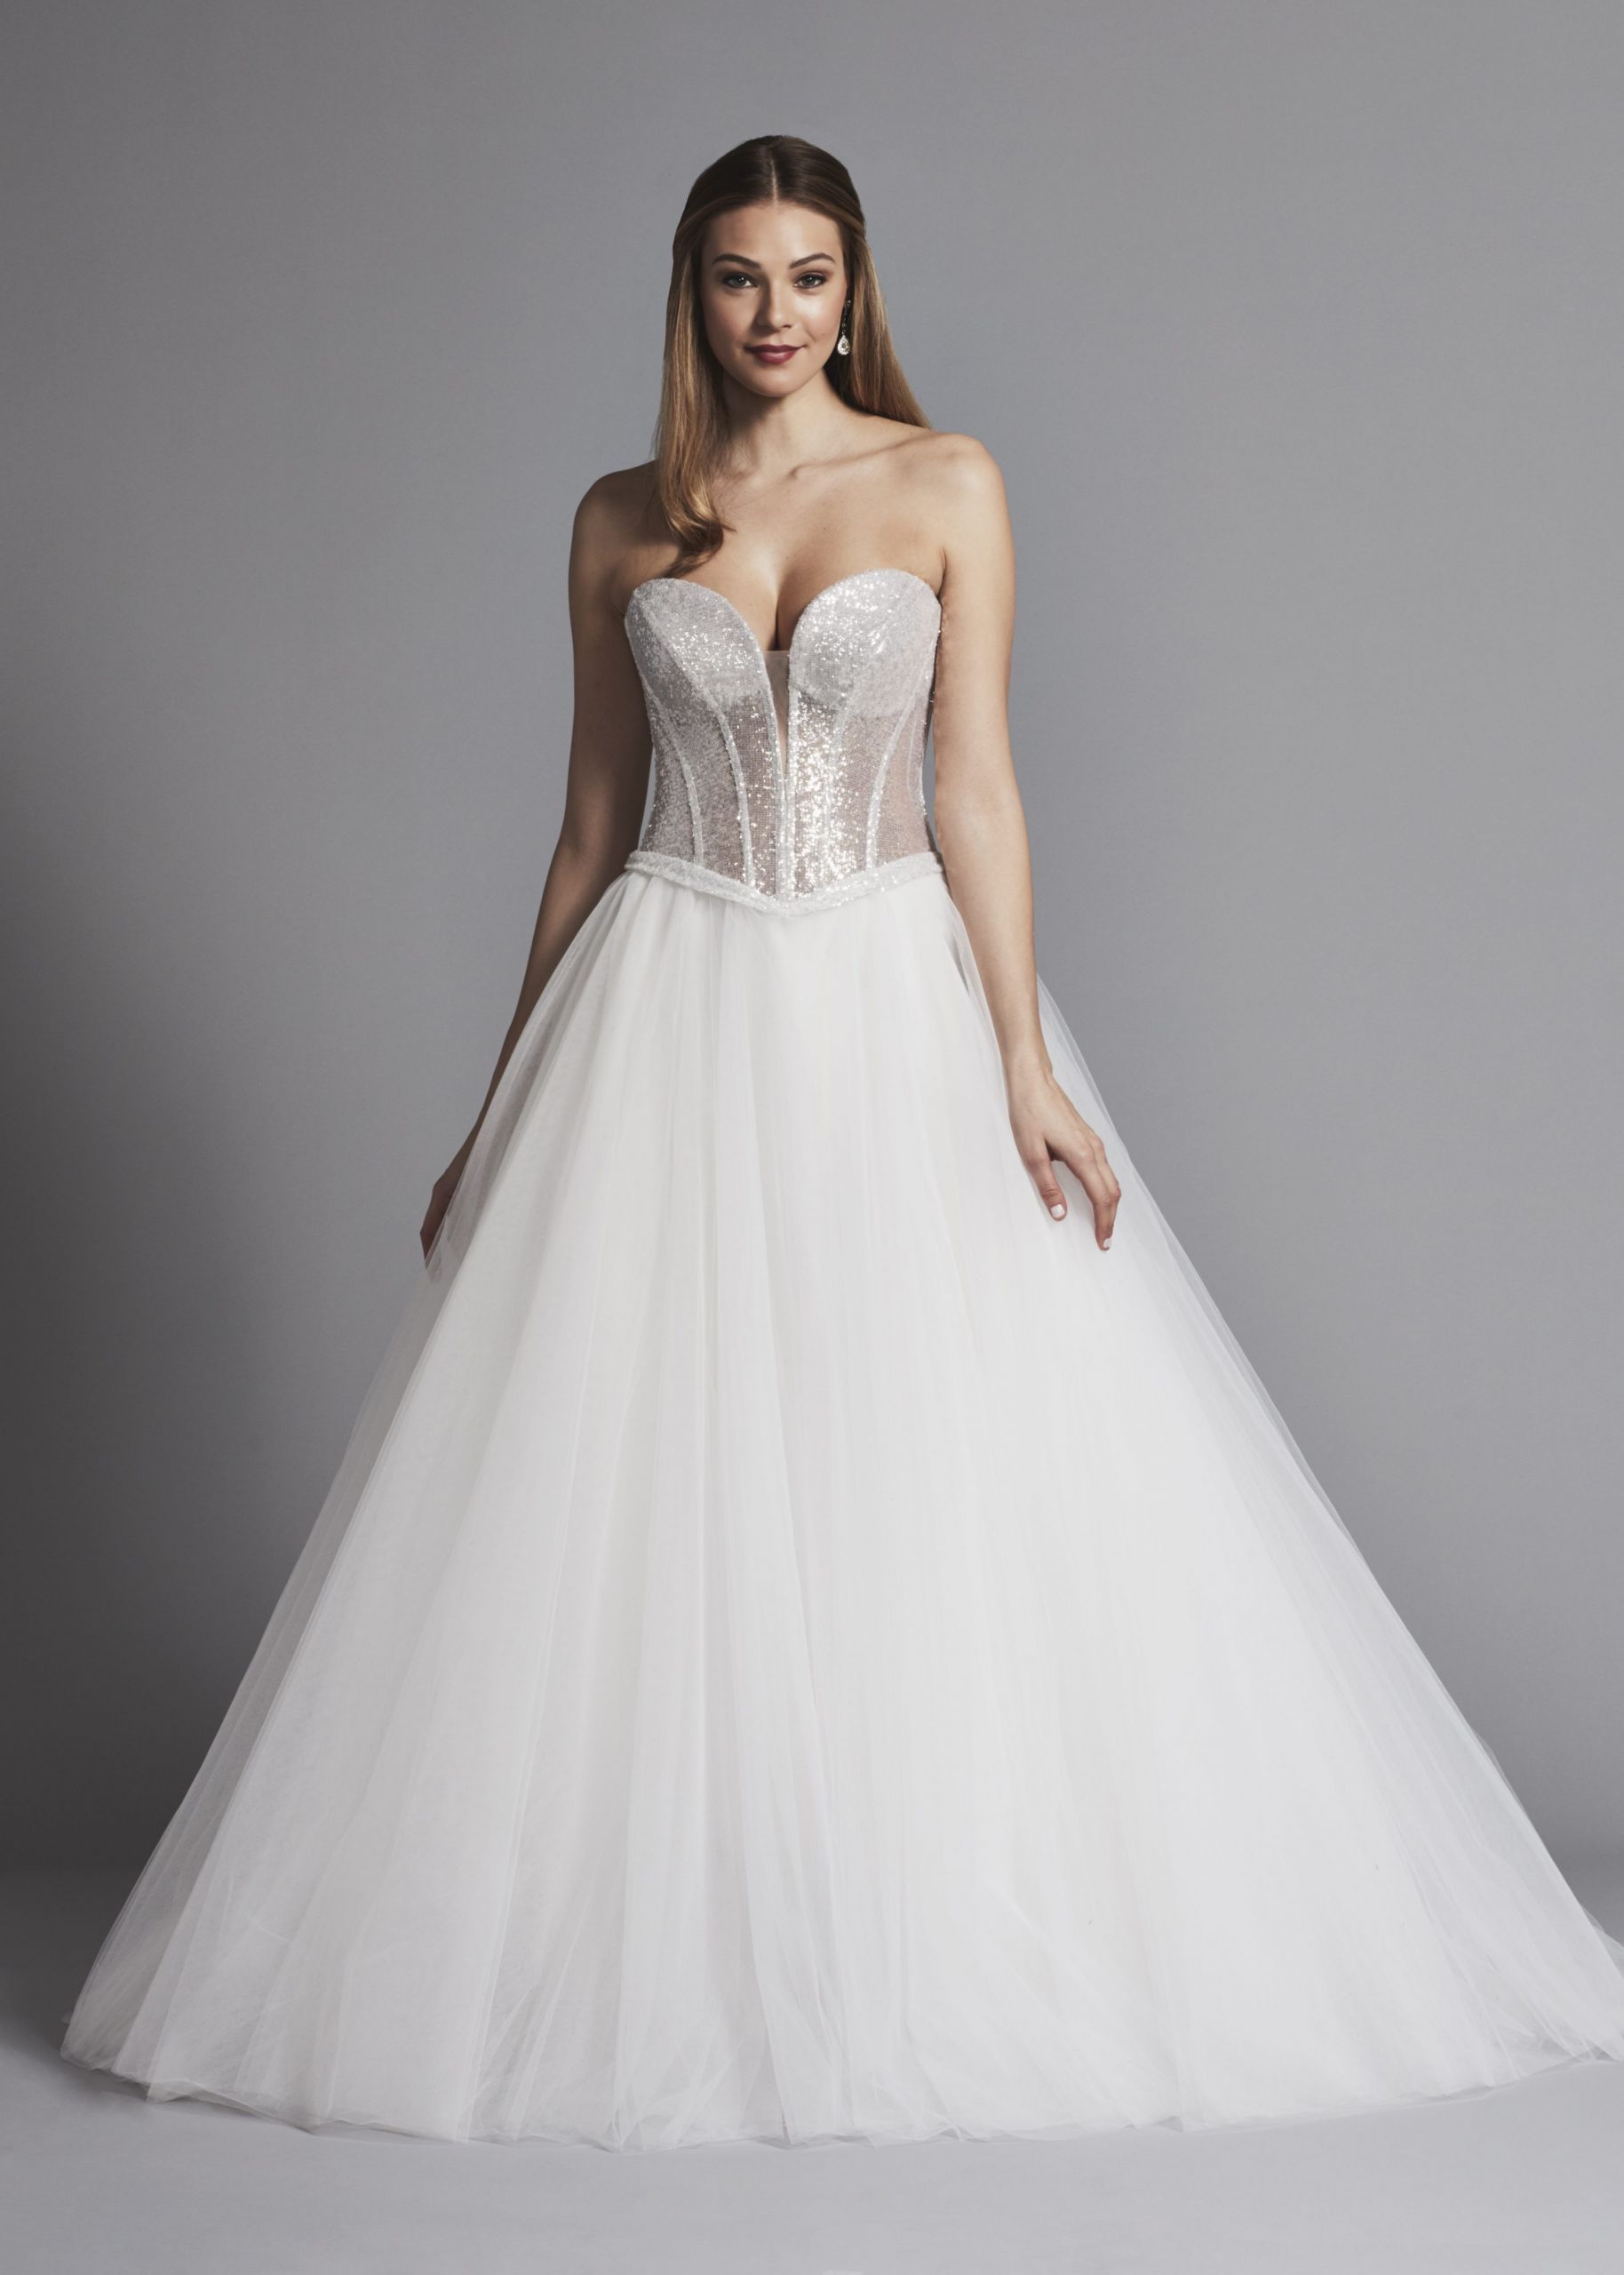 Corset Wedding Dress
 Glitter Strapless Ball Gown Wedding Dress With Corset